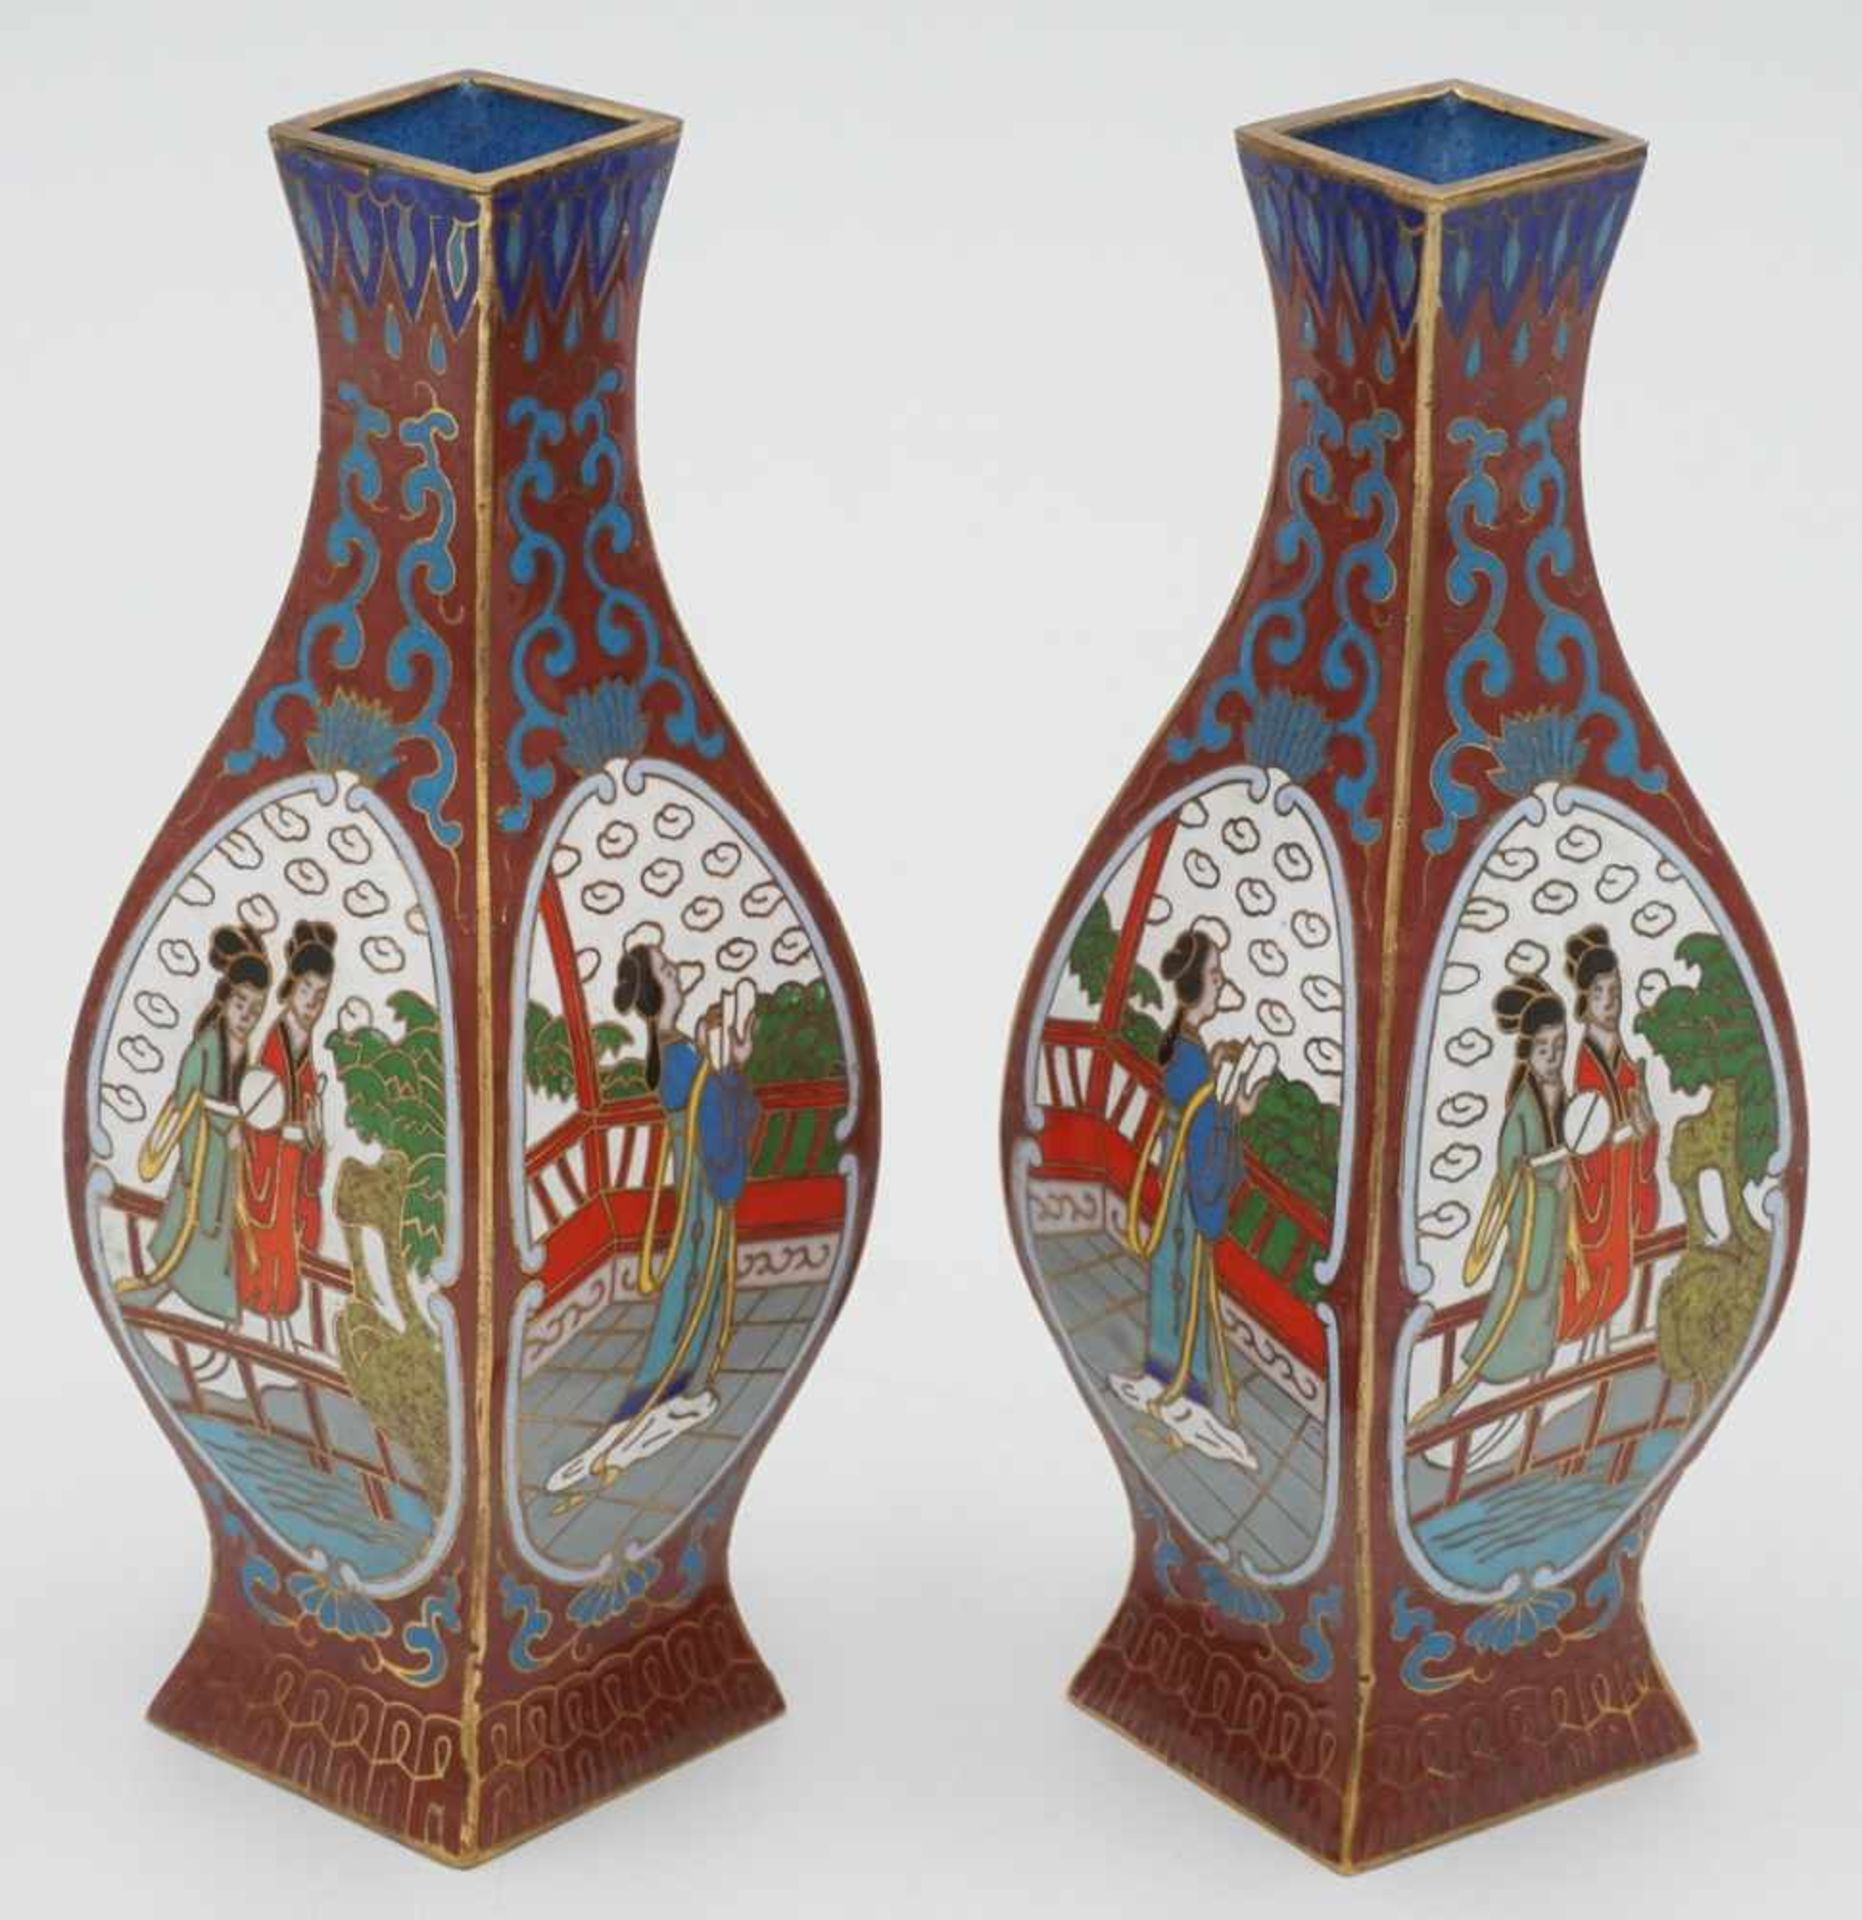 Zwei kleine Cloisonné Vasen, China, 20. Jh. - Bild 2 aus 2